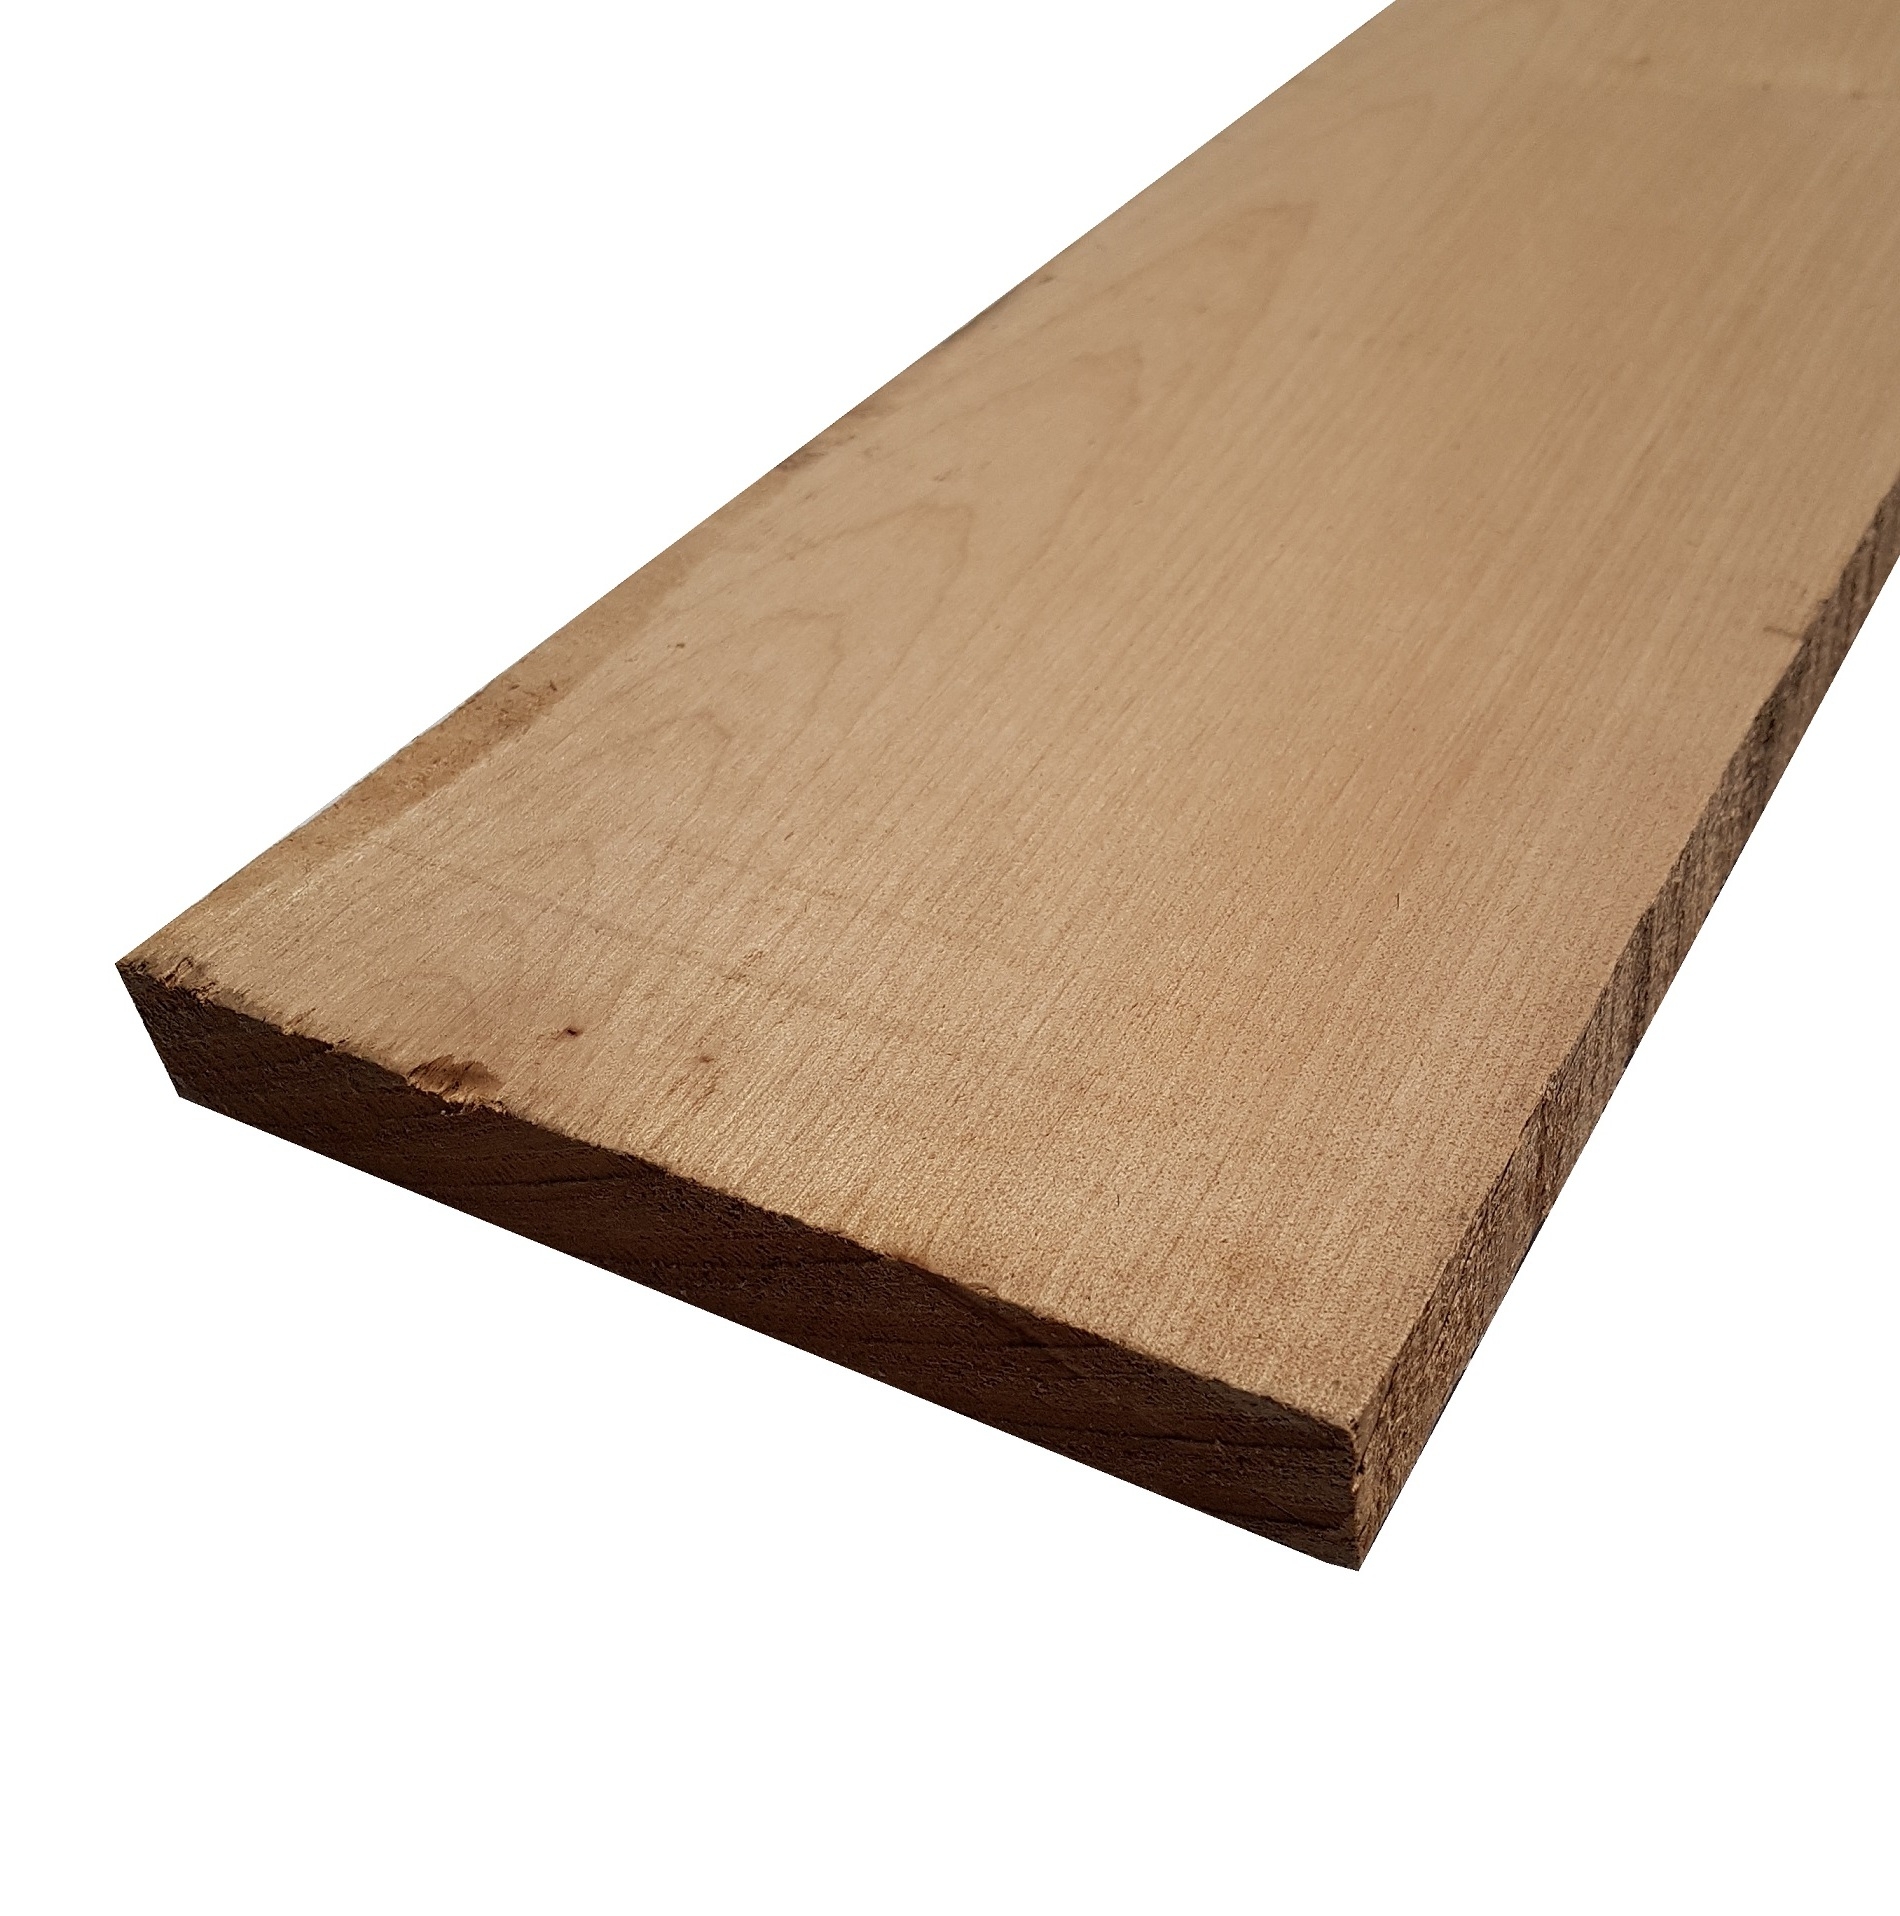 Tavola legno di Acero Pacific Coast Maple Calibrato refilato grezzo mm 38 x 90 x 2450